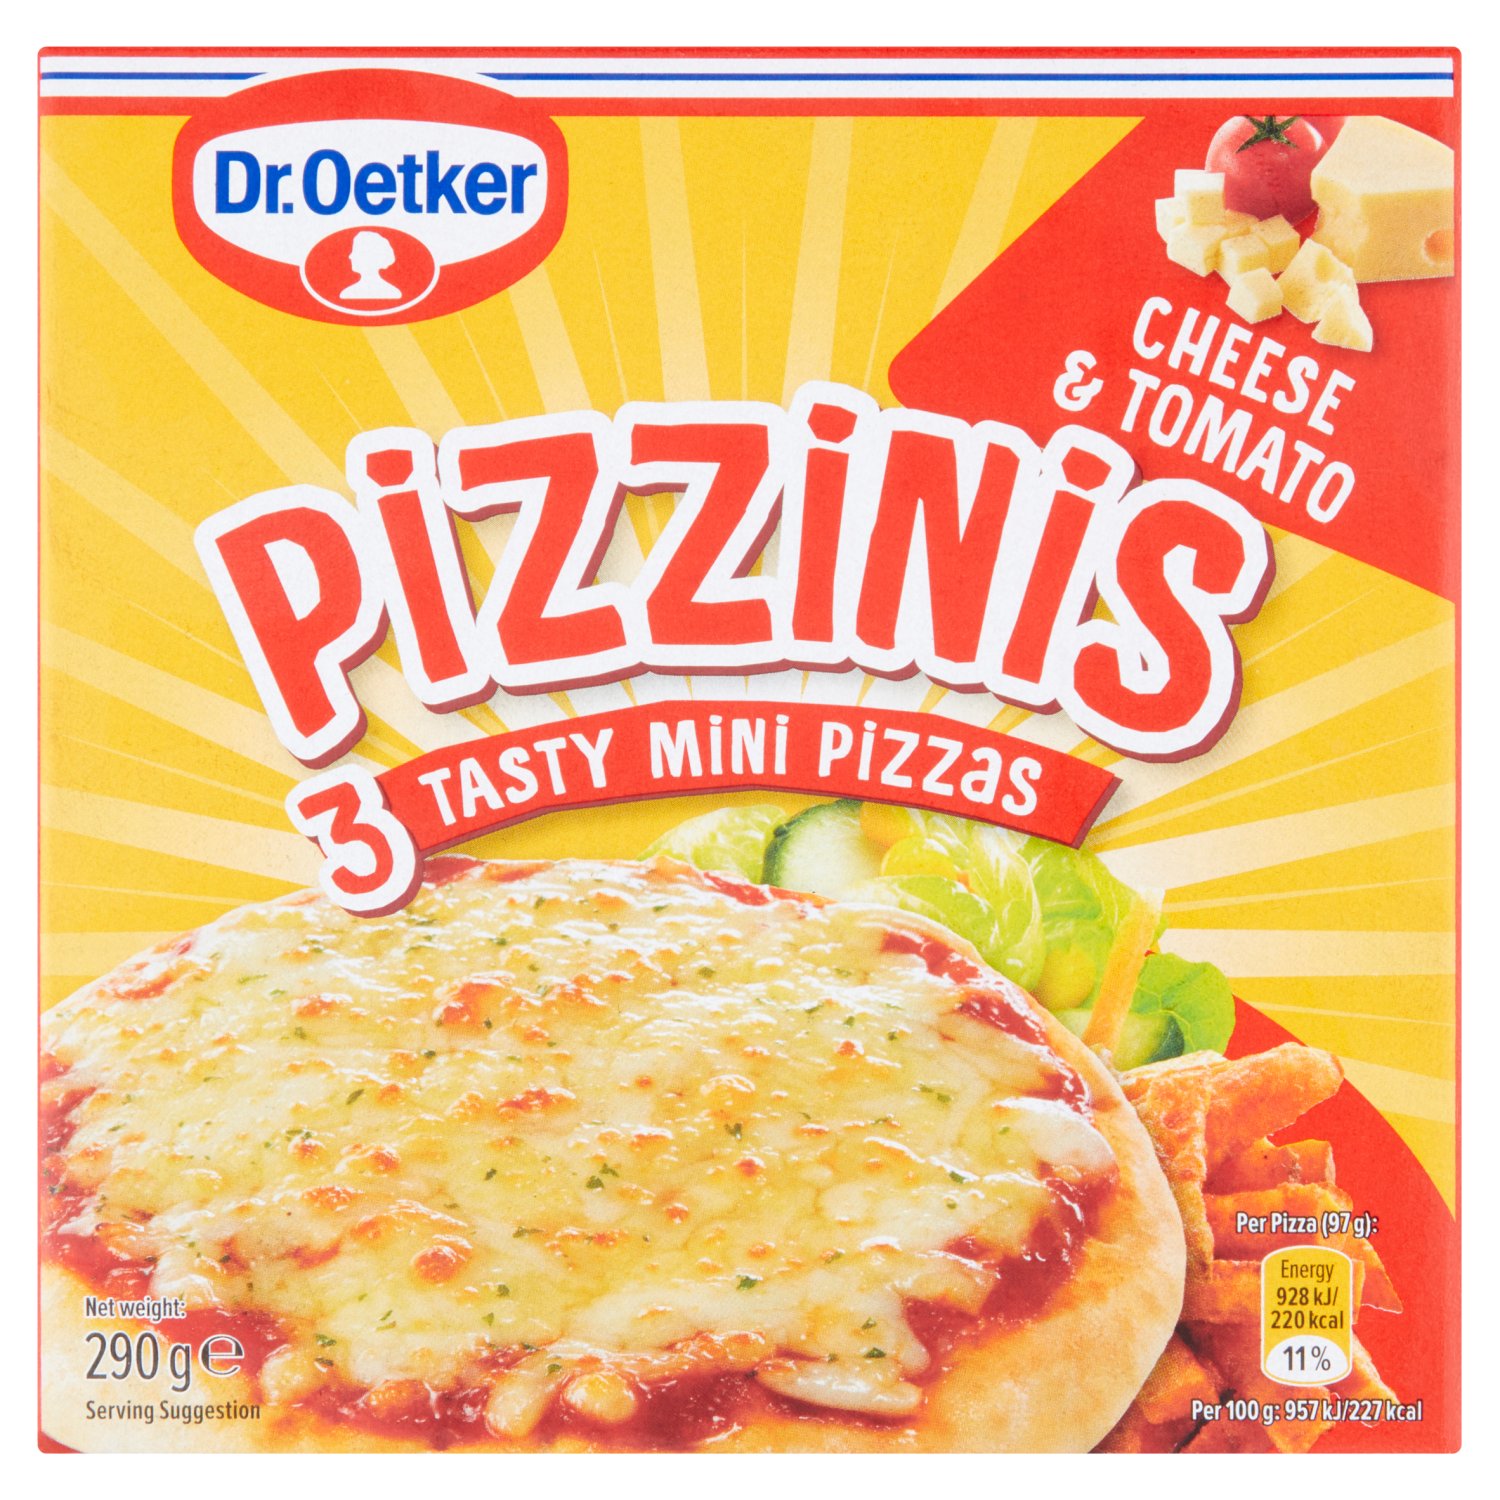 Dr. Oetker Pizzinis 3 Tasty Mini Pizzas Cheese & Tomato 290g